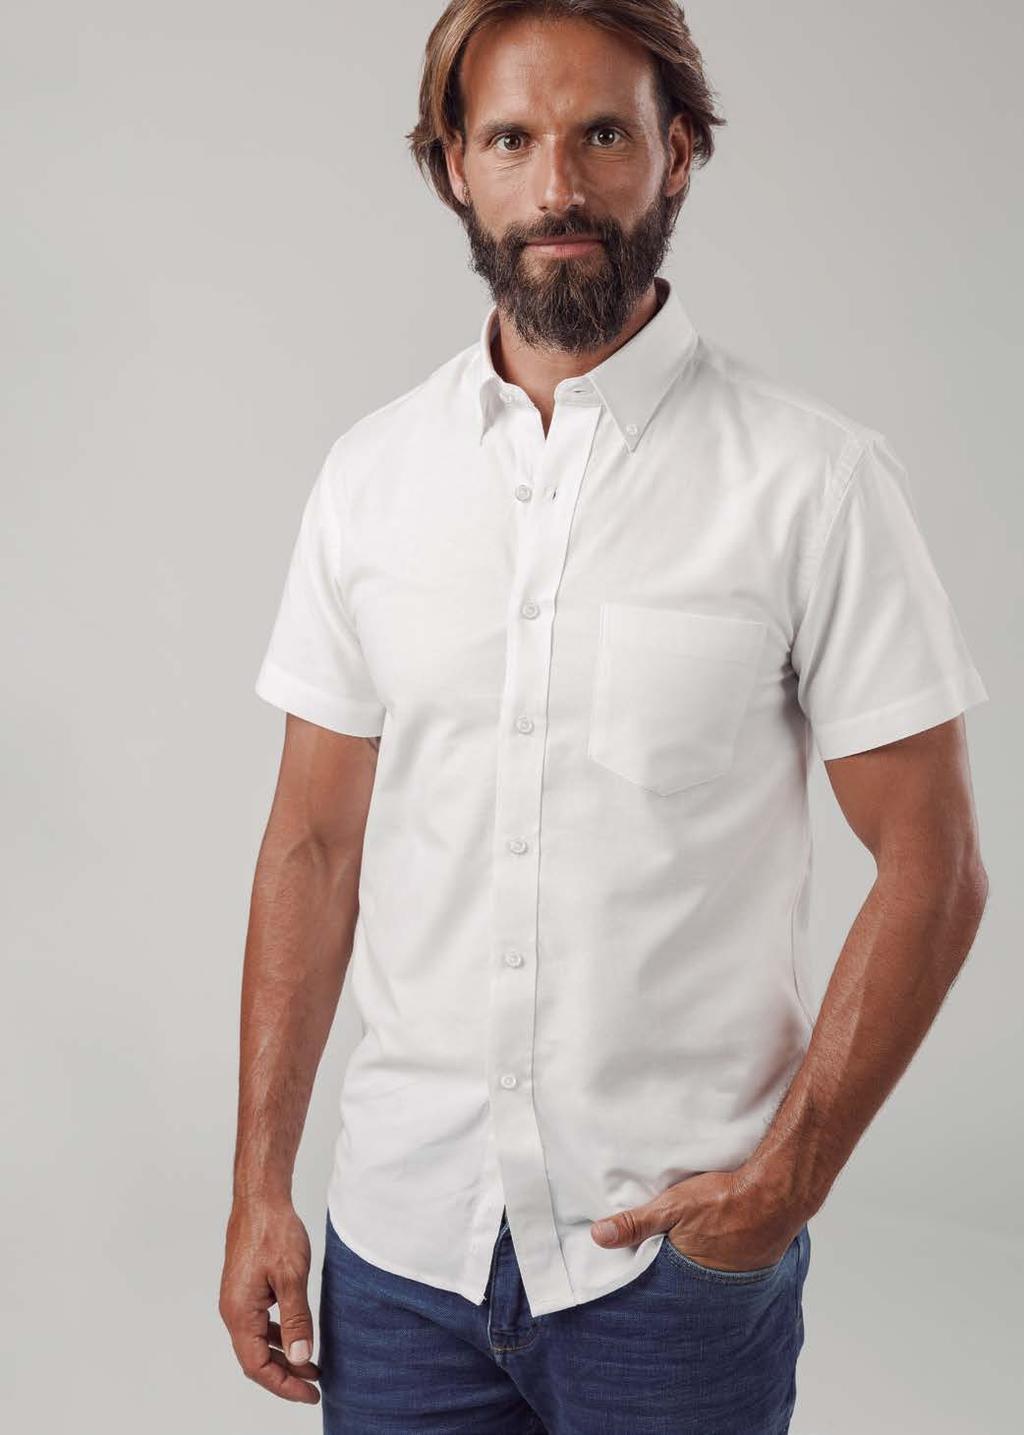 ONDON camisa oxford para homem 130 g/m 2 Branco zul Céu 70% algodão 30% poliéster Manga curta Bolso do lado esquerdo Colarinho